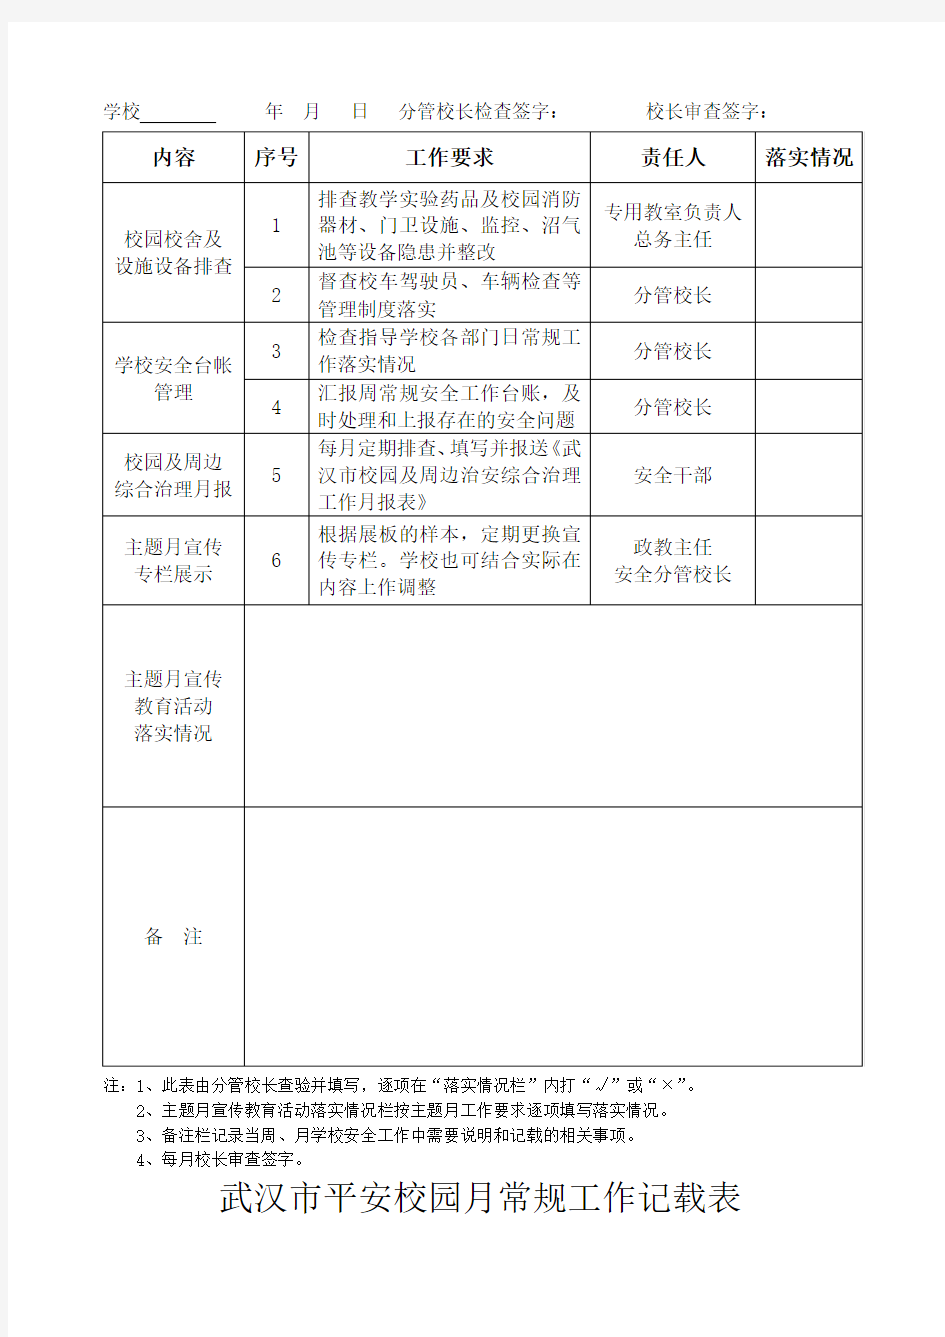 武汉市平安校园周常规工作记载表